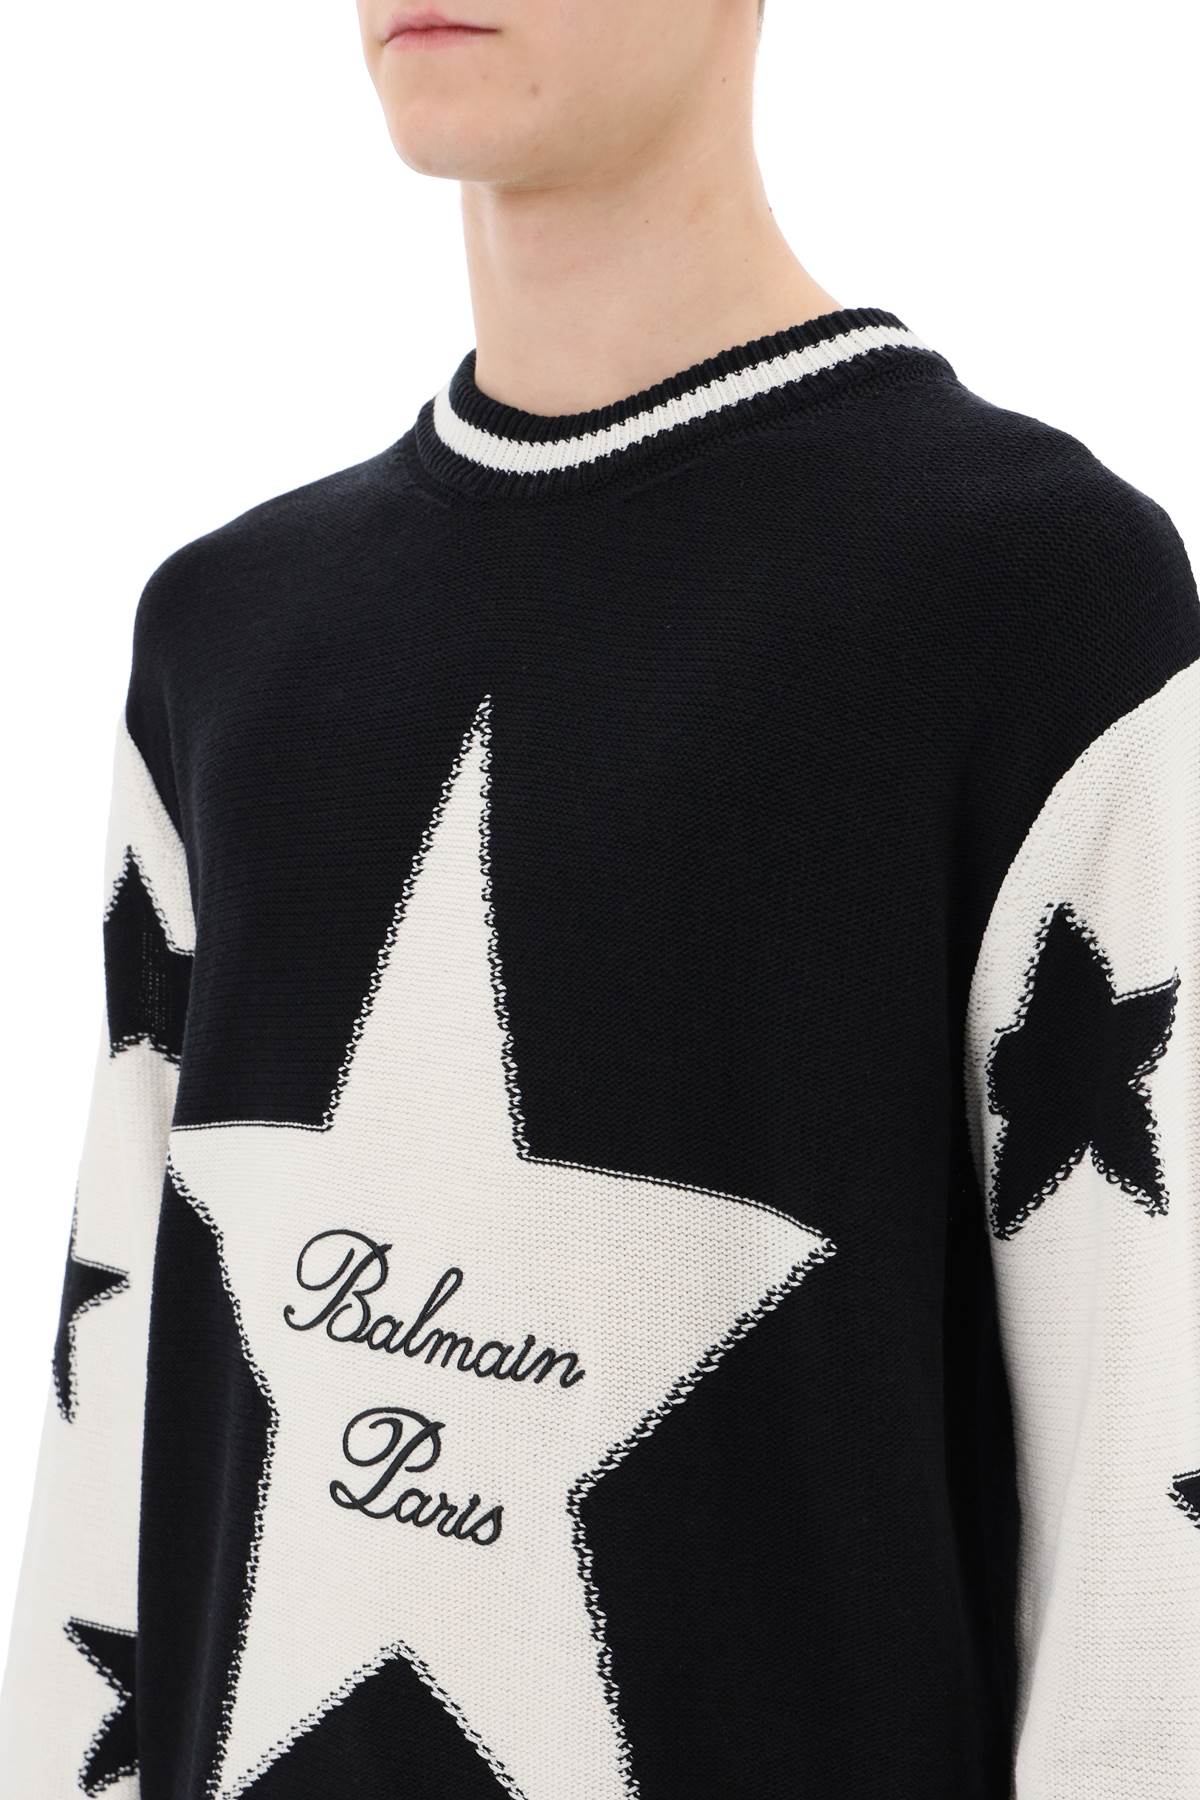 Balmain Balmain sweater with star motif